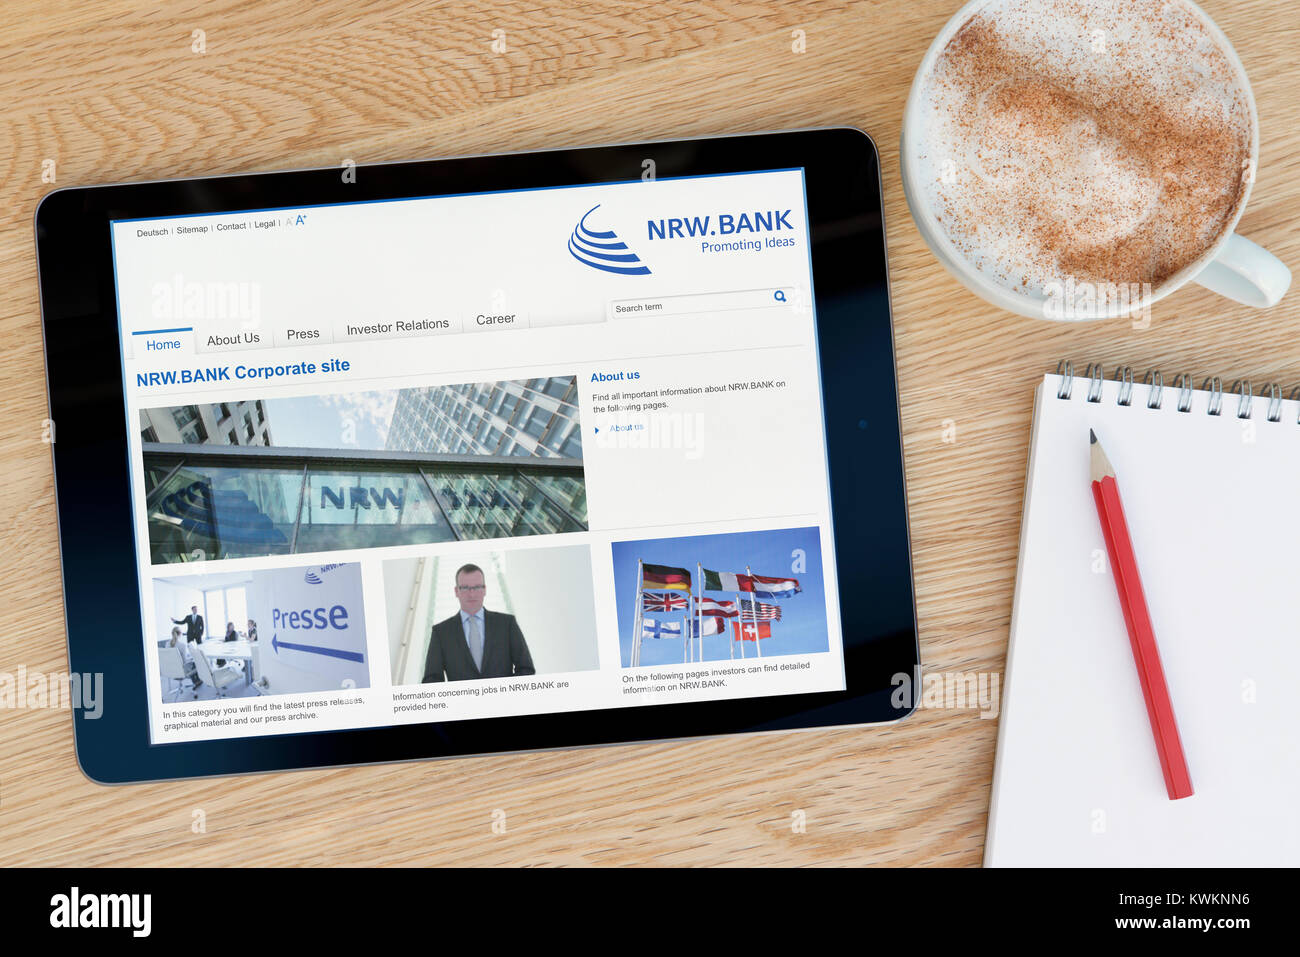 Die NRW.BANK Website auf einem iPad tablet device, ruht auf einem hölzernen Tisch neben einem Notizblock, Bleistift und Tasse Kaffee (nur redaktionell) Stockfoto